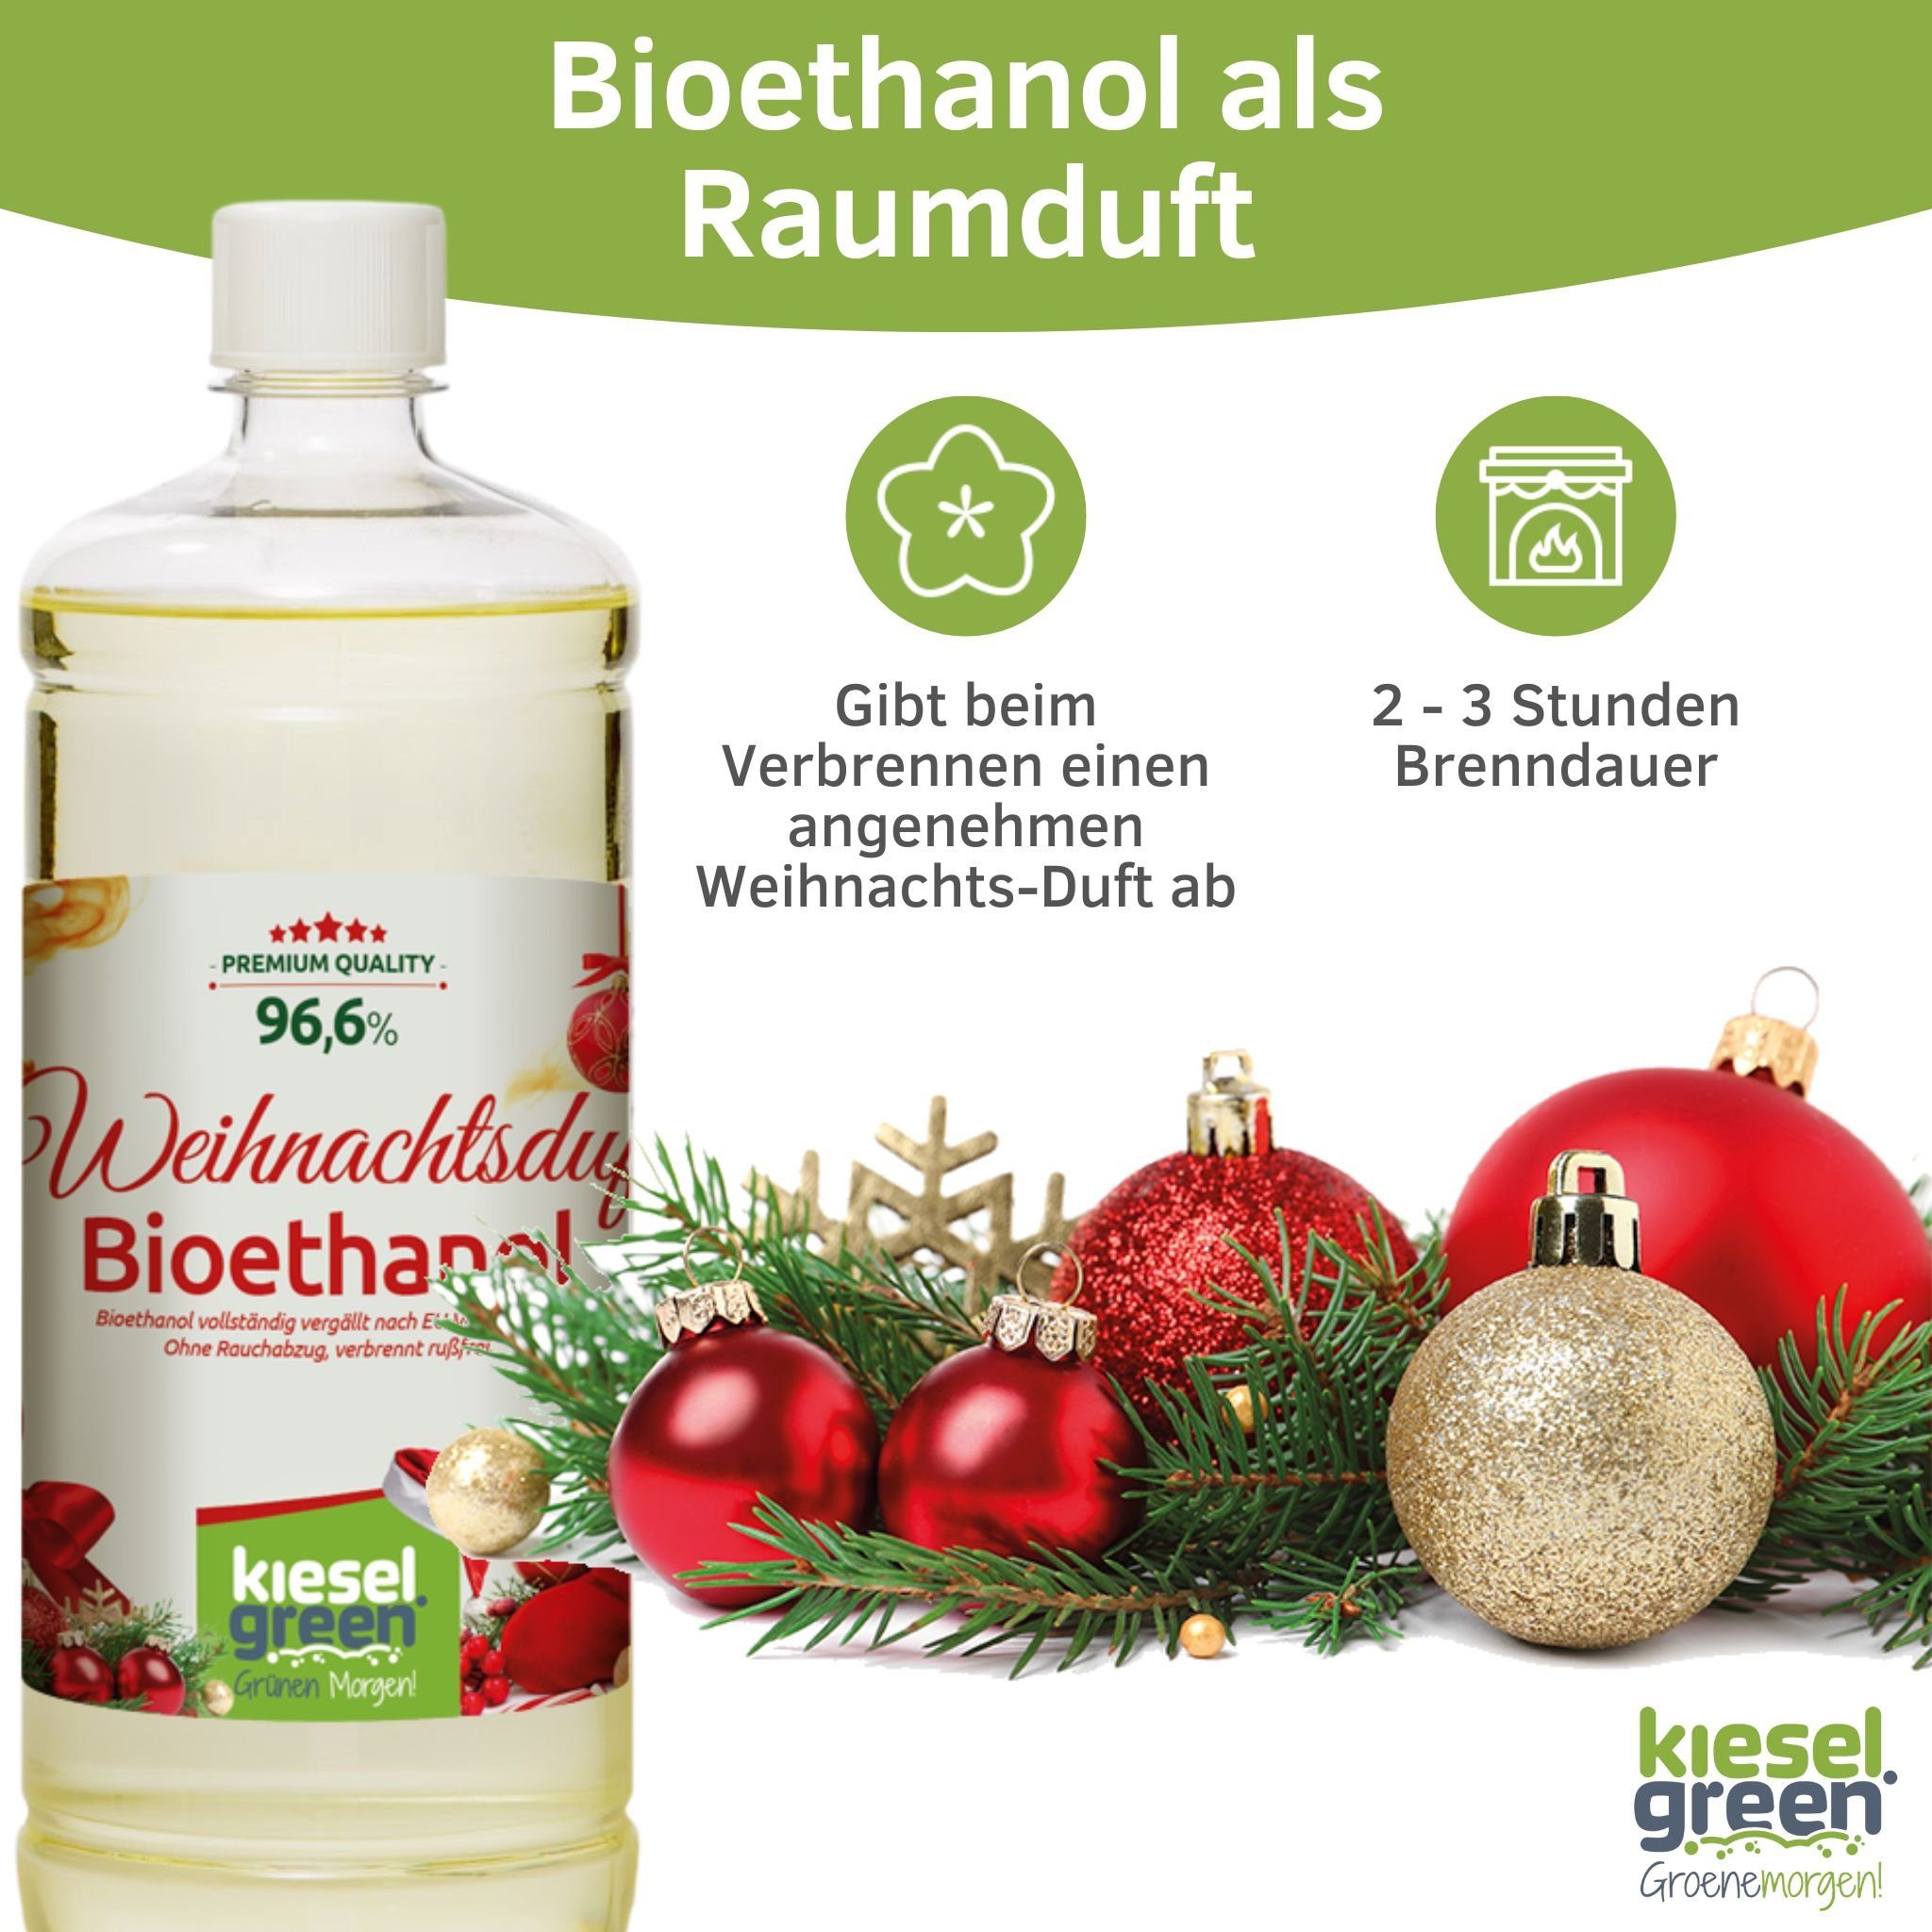 Liter Geruchlos Weihnachtsduft 1 6x + Bioethanol 12 6x x Sets Bioethanol KieselGreen 6x - Flasche + 6x KieselGreen